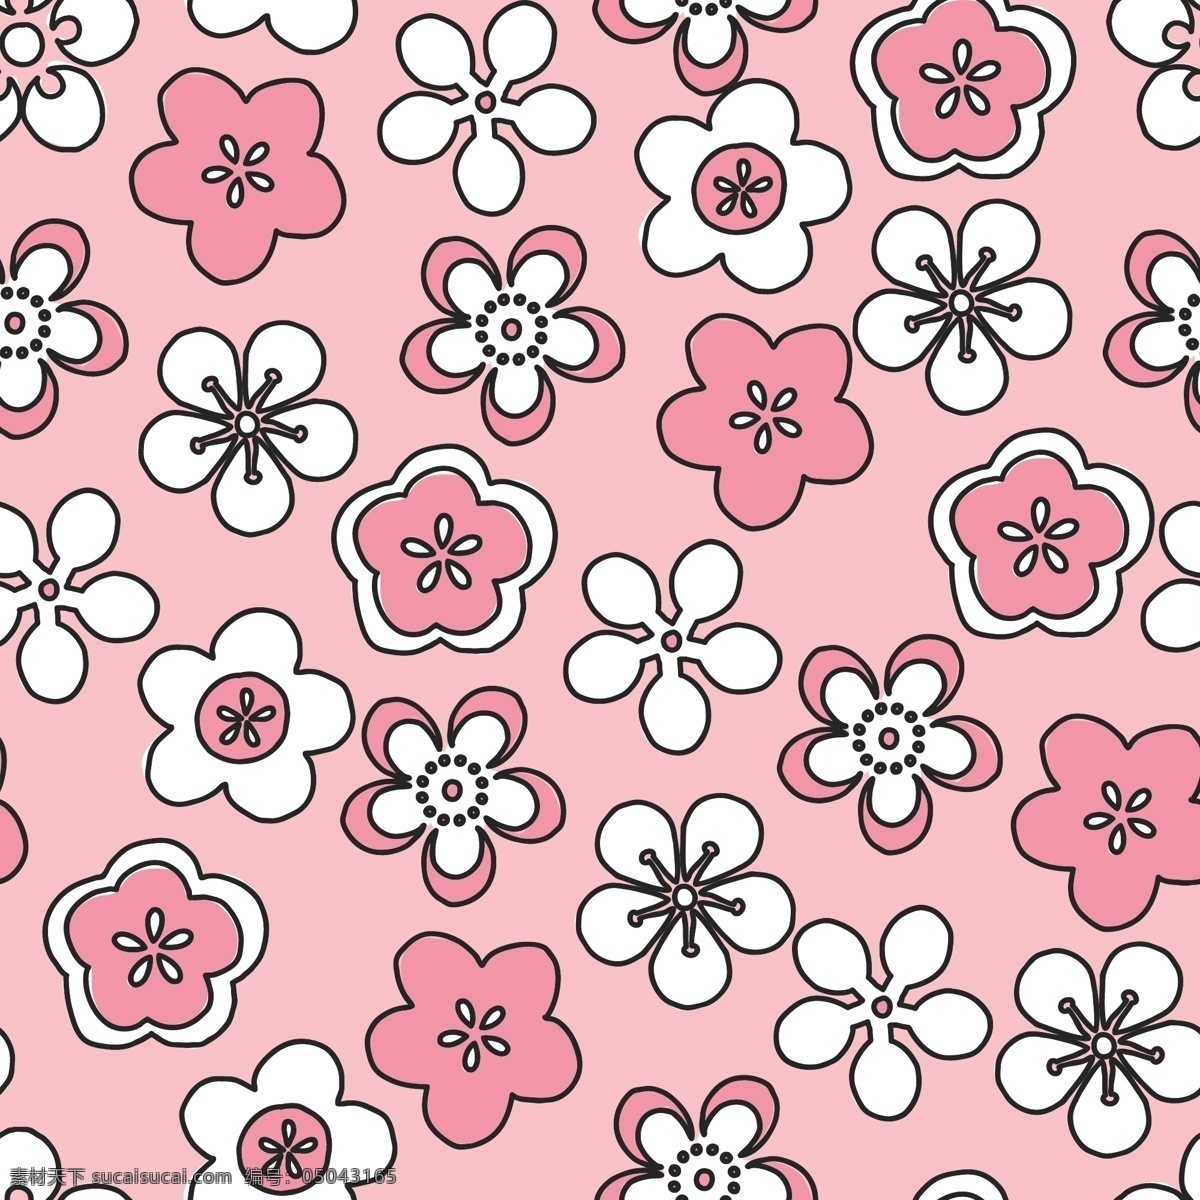 手绘 粉色 花卉 背景 花卉背景 背景素材 手绘花卉 粉色背景